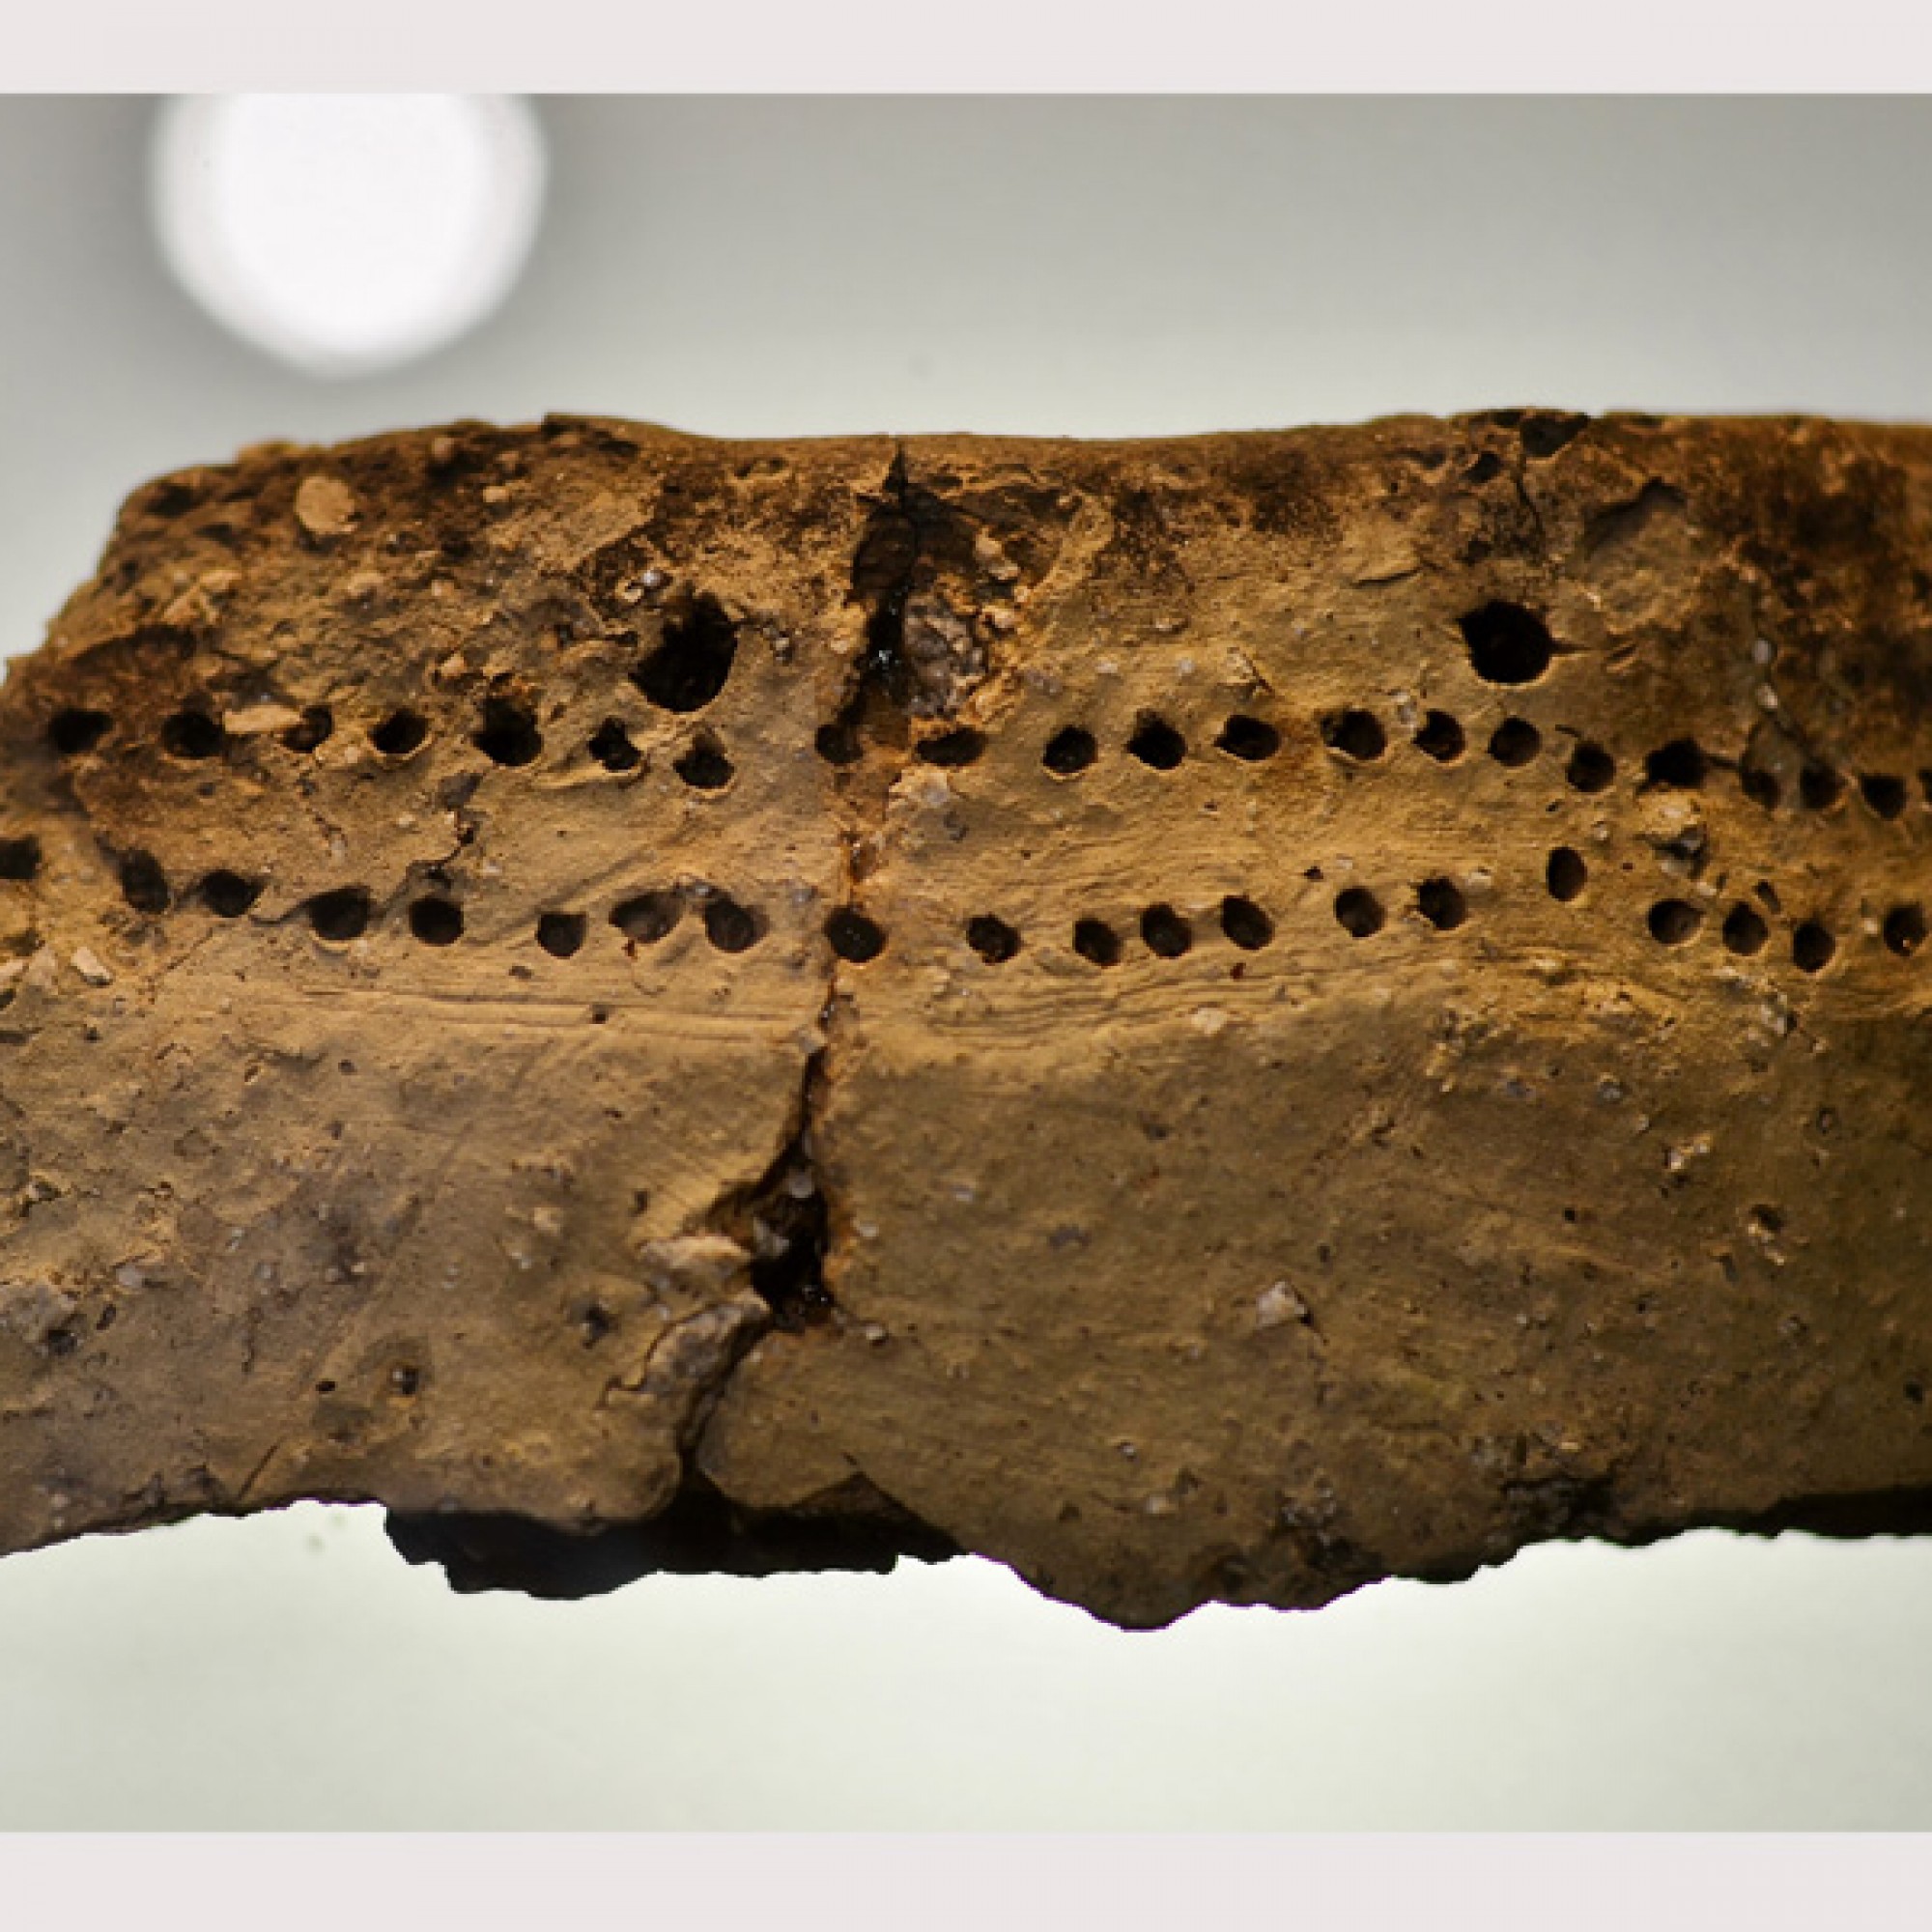 Fragment eines verzierten Topfs aus der Horgener Kultur, gefunden bei einer Grabung in Zürich (Hartmann Linge, CC BY-SA 3.0, commons.wikimedia.org)